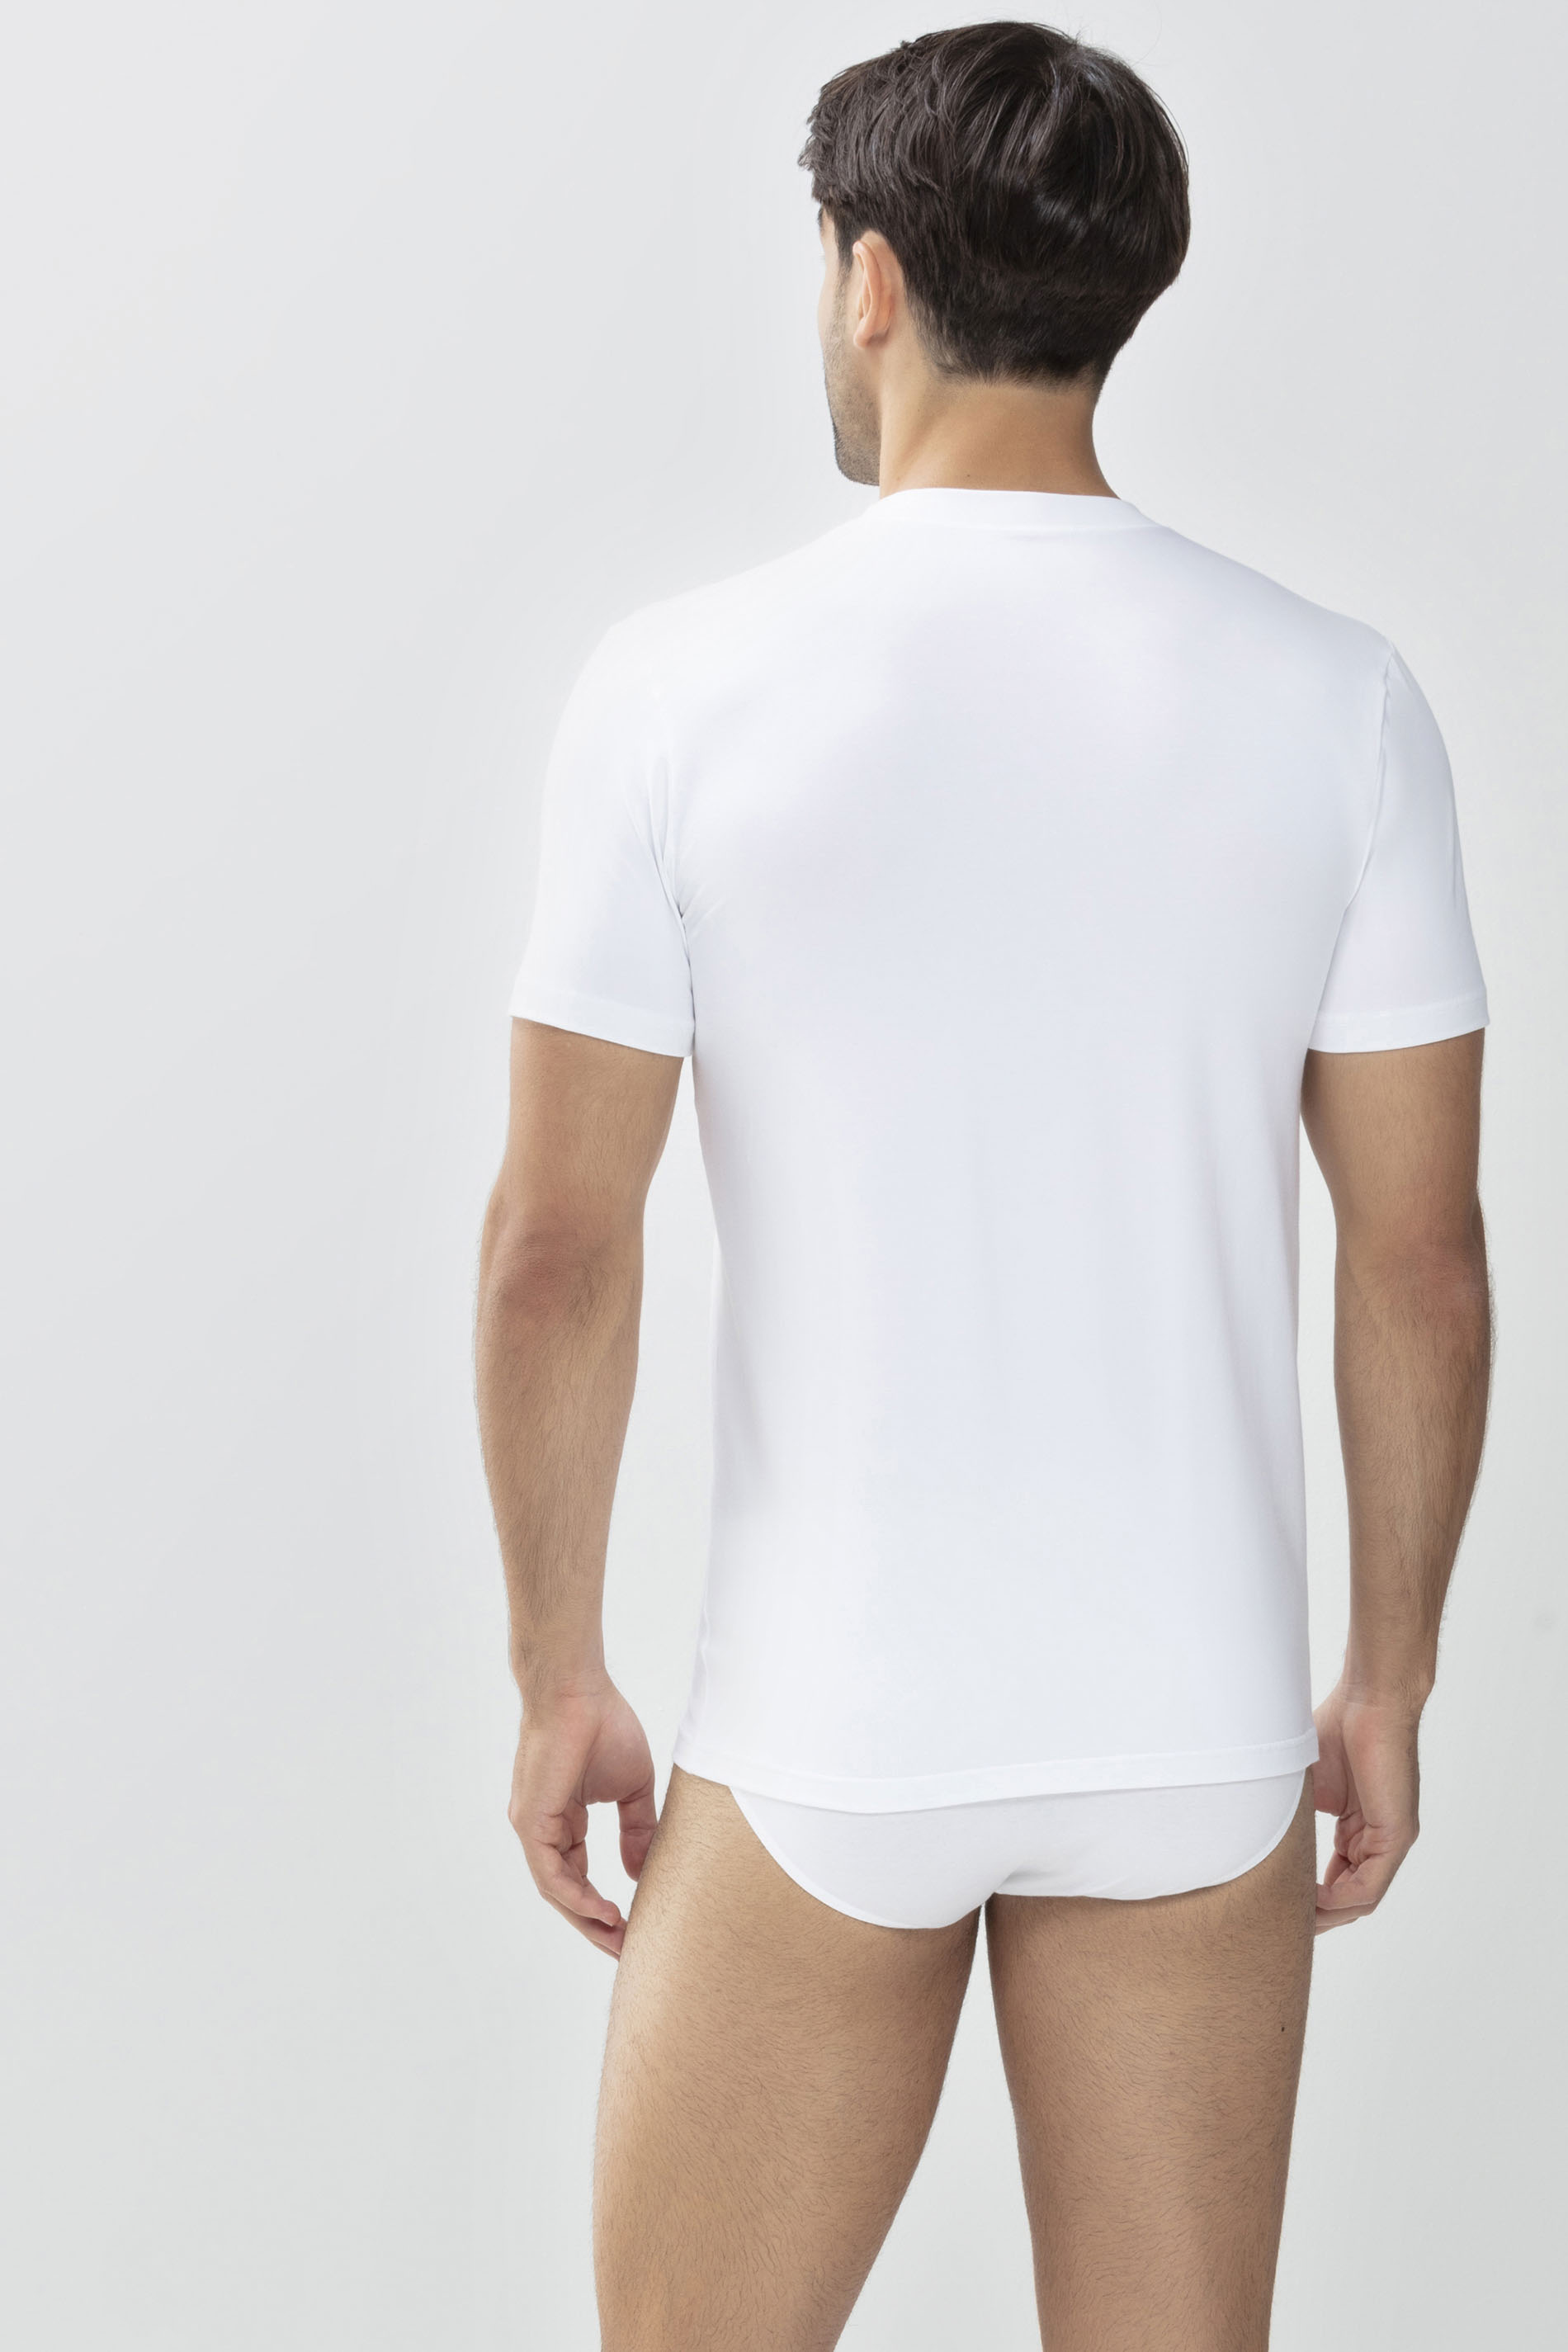 Shirt Weiss Serie Dry Cotton Rückansicht | mey®